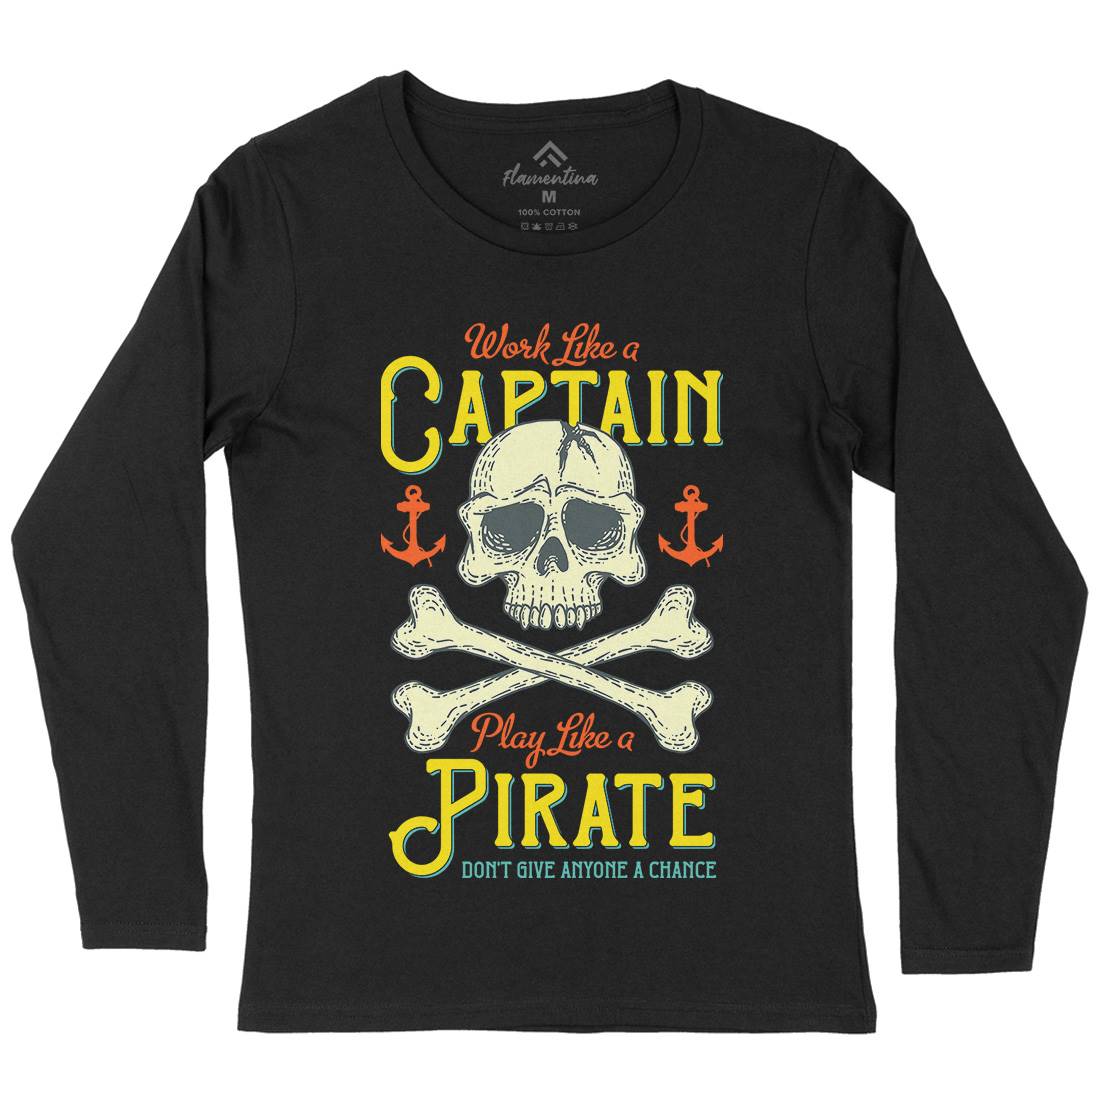 Captain Pirate Womens Long Sleeve T-Shirt Navy D915